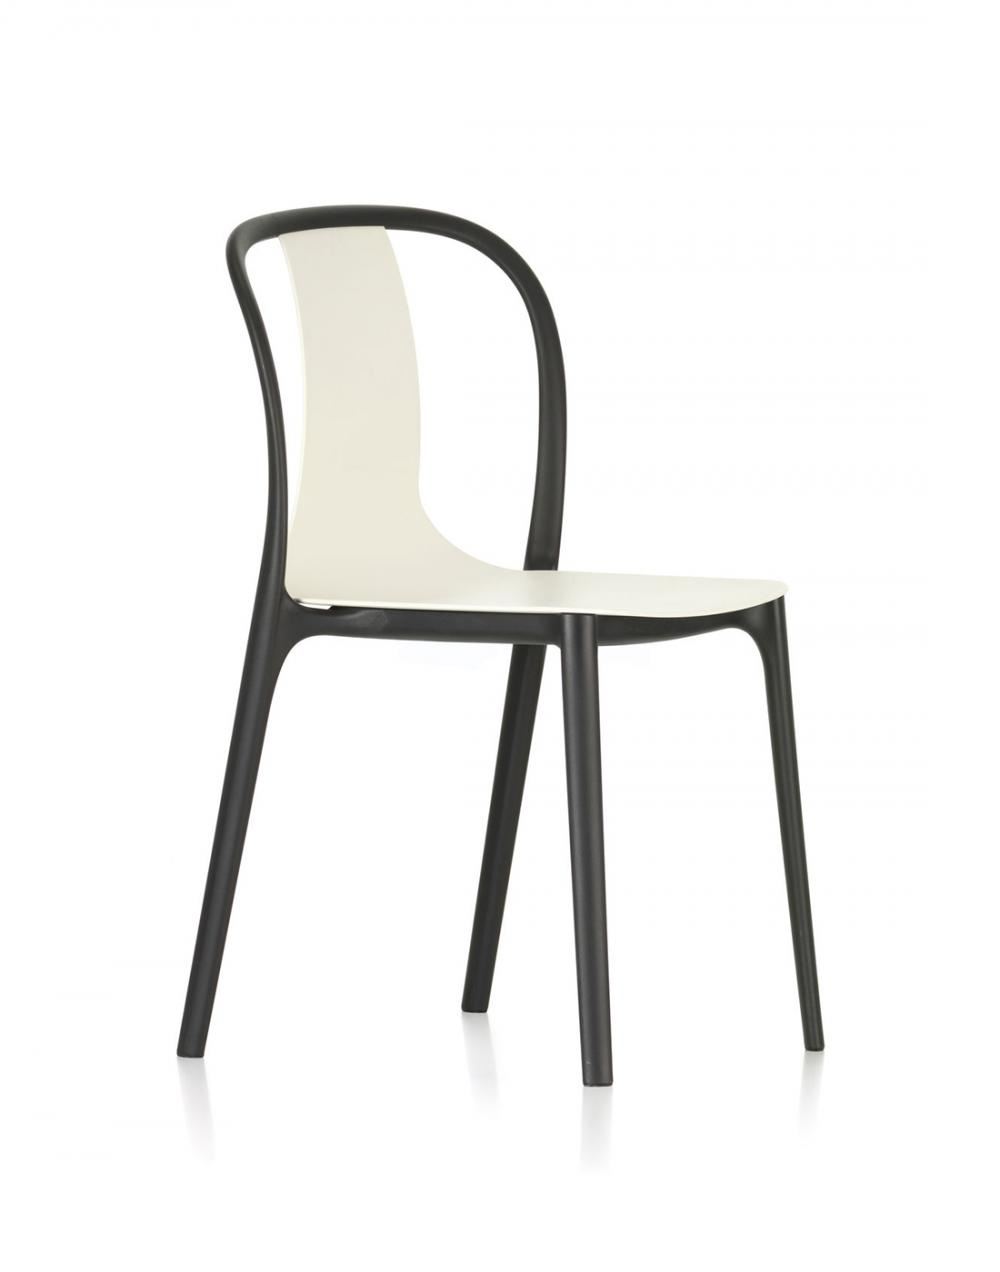 Belleville Chair Armchair Plastic Chair Plastic Black